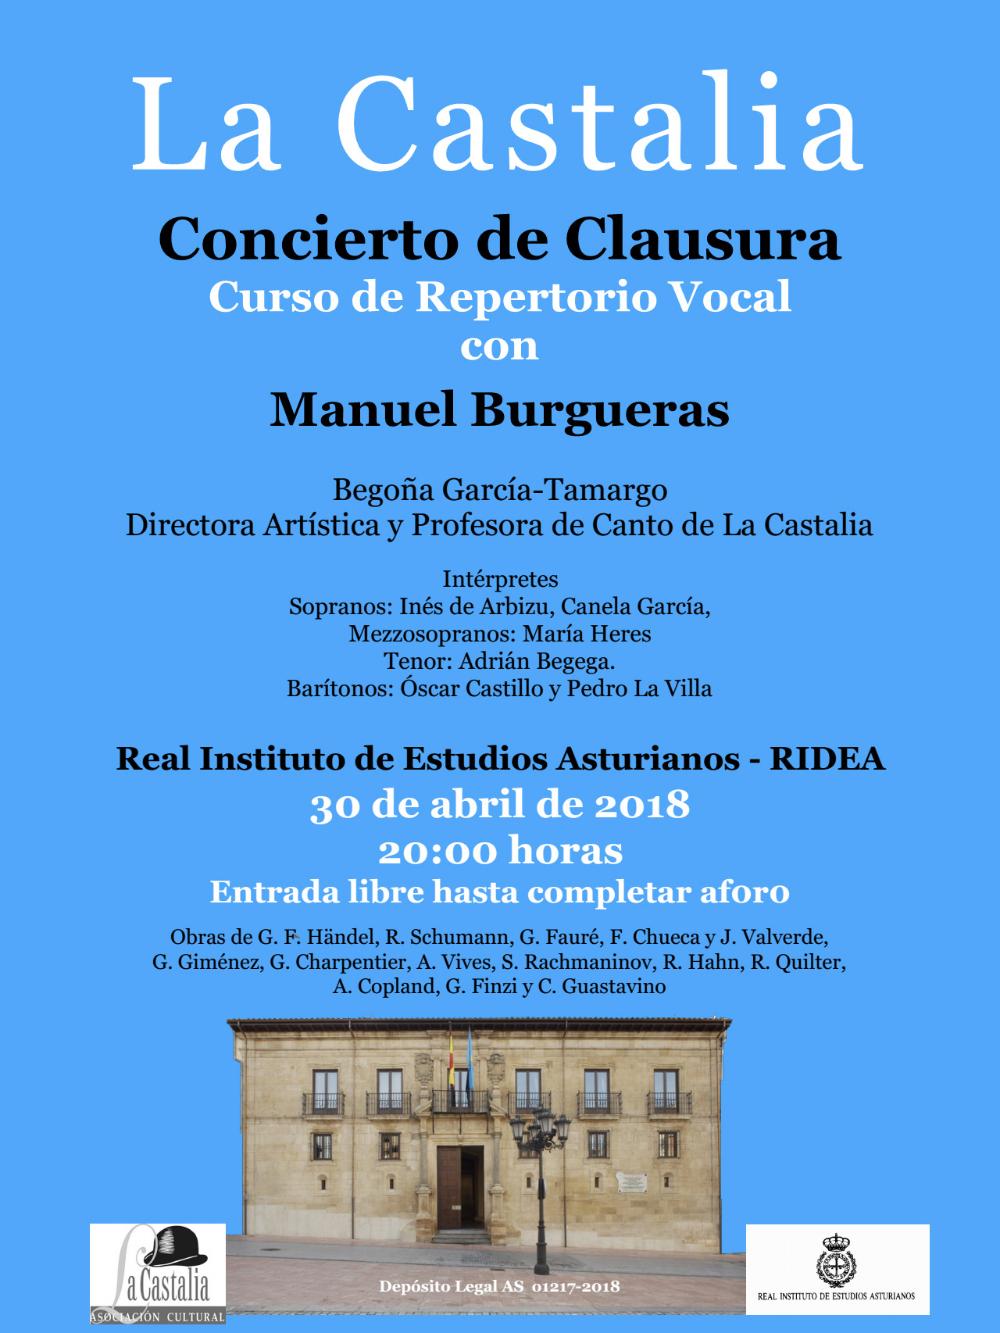 Imagen - Concierto de clausura del Curso de Repertorio Vocal con Manuel Burgueras